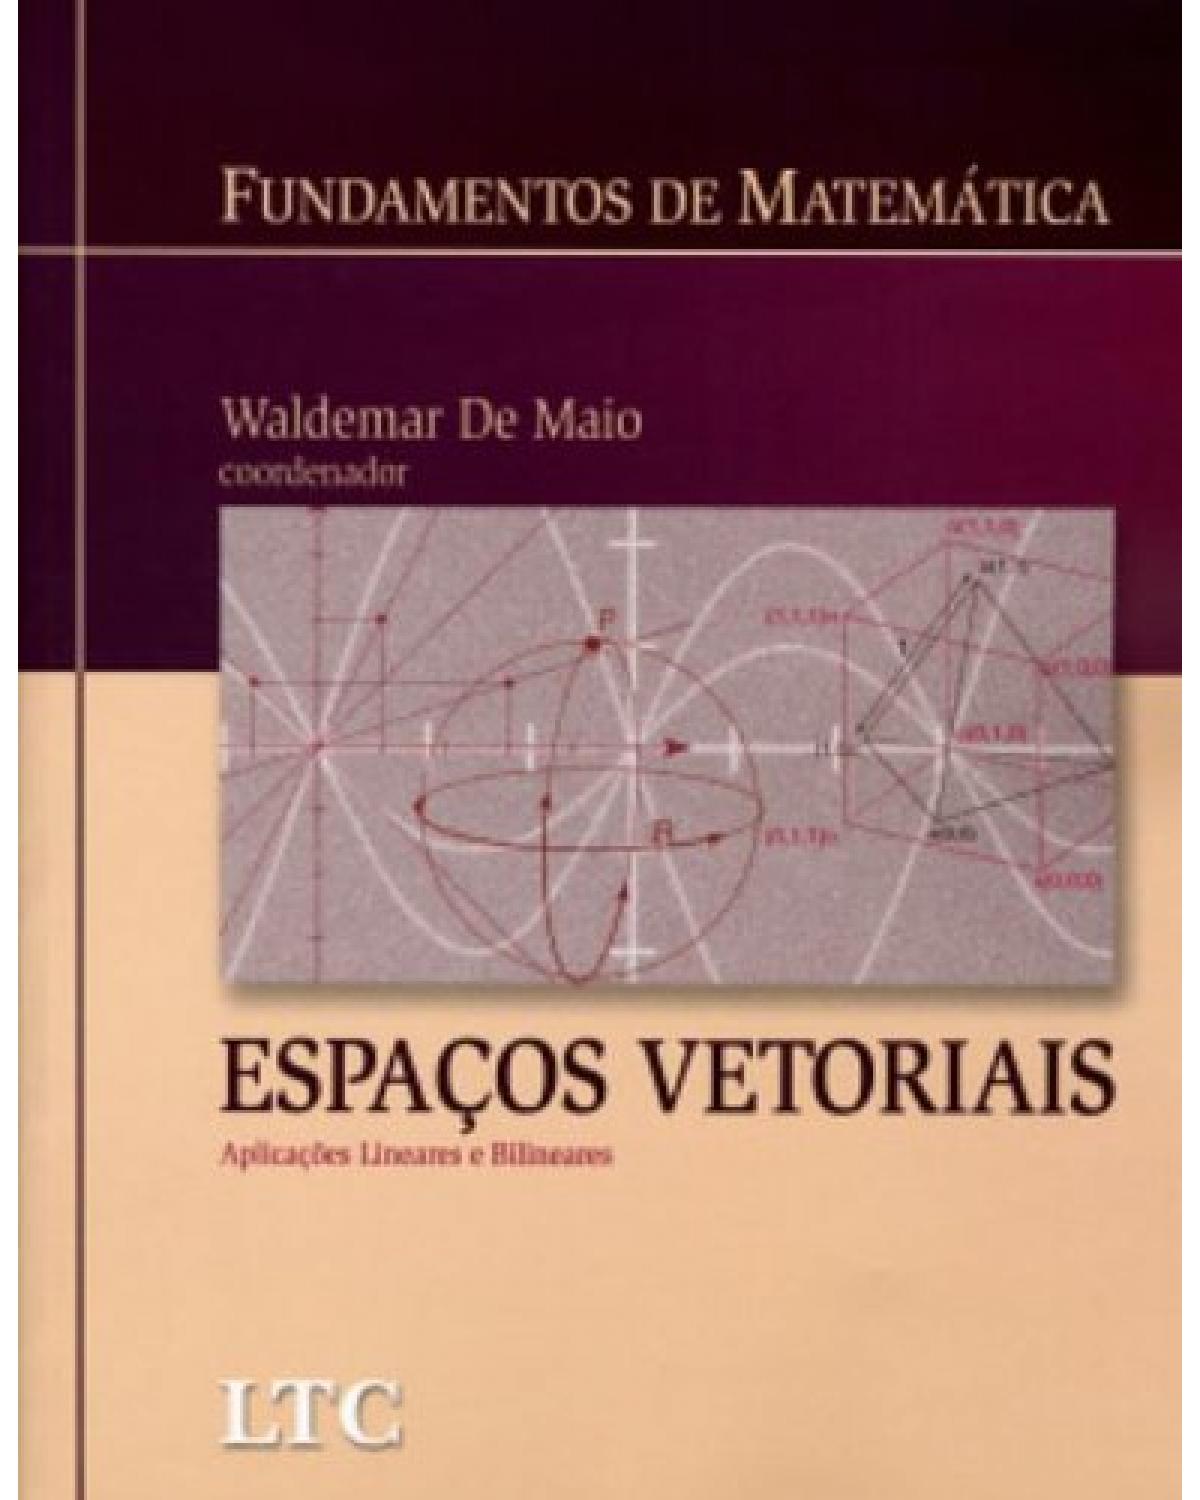 Espaços vetoriais - Aplicações lineares e bilineares - 1ª Edição | 2007